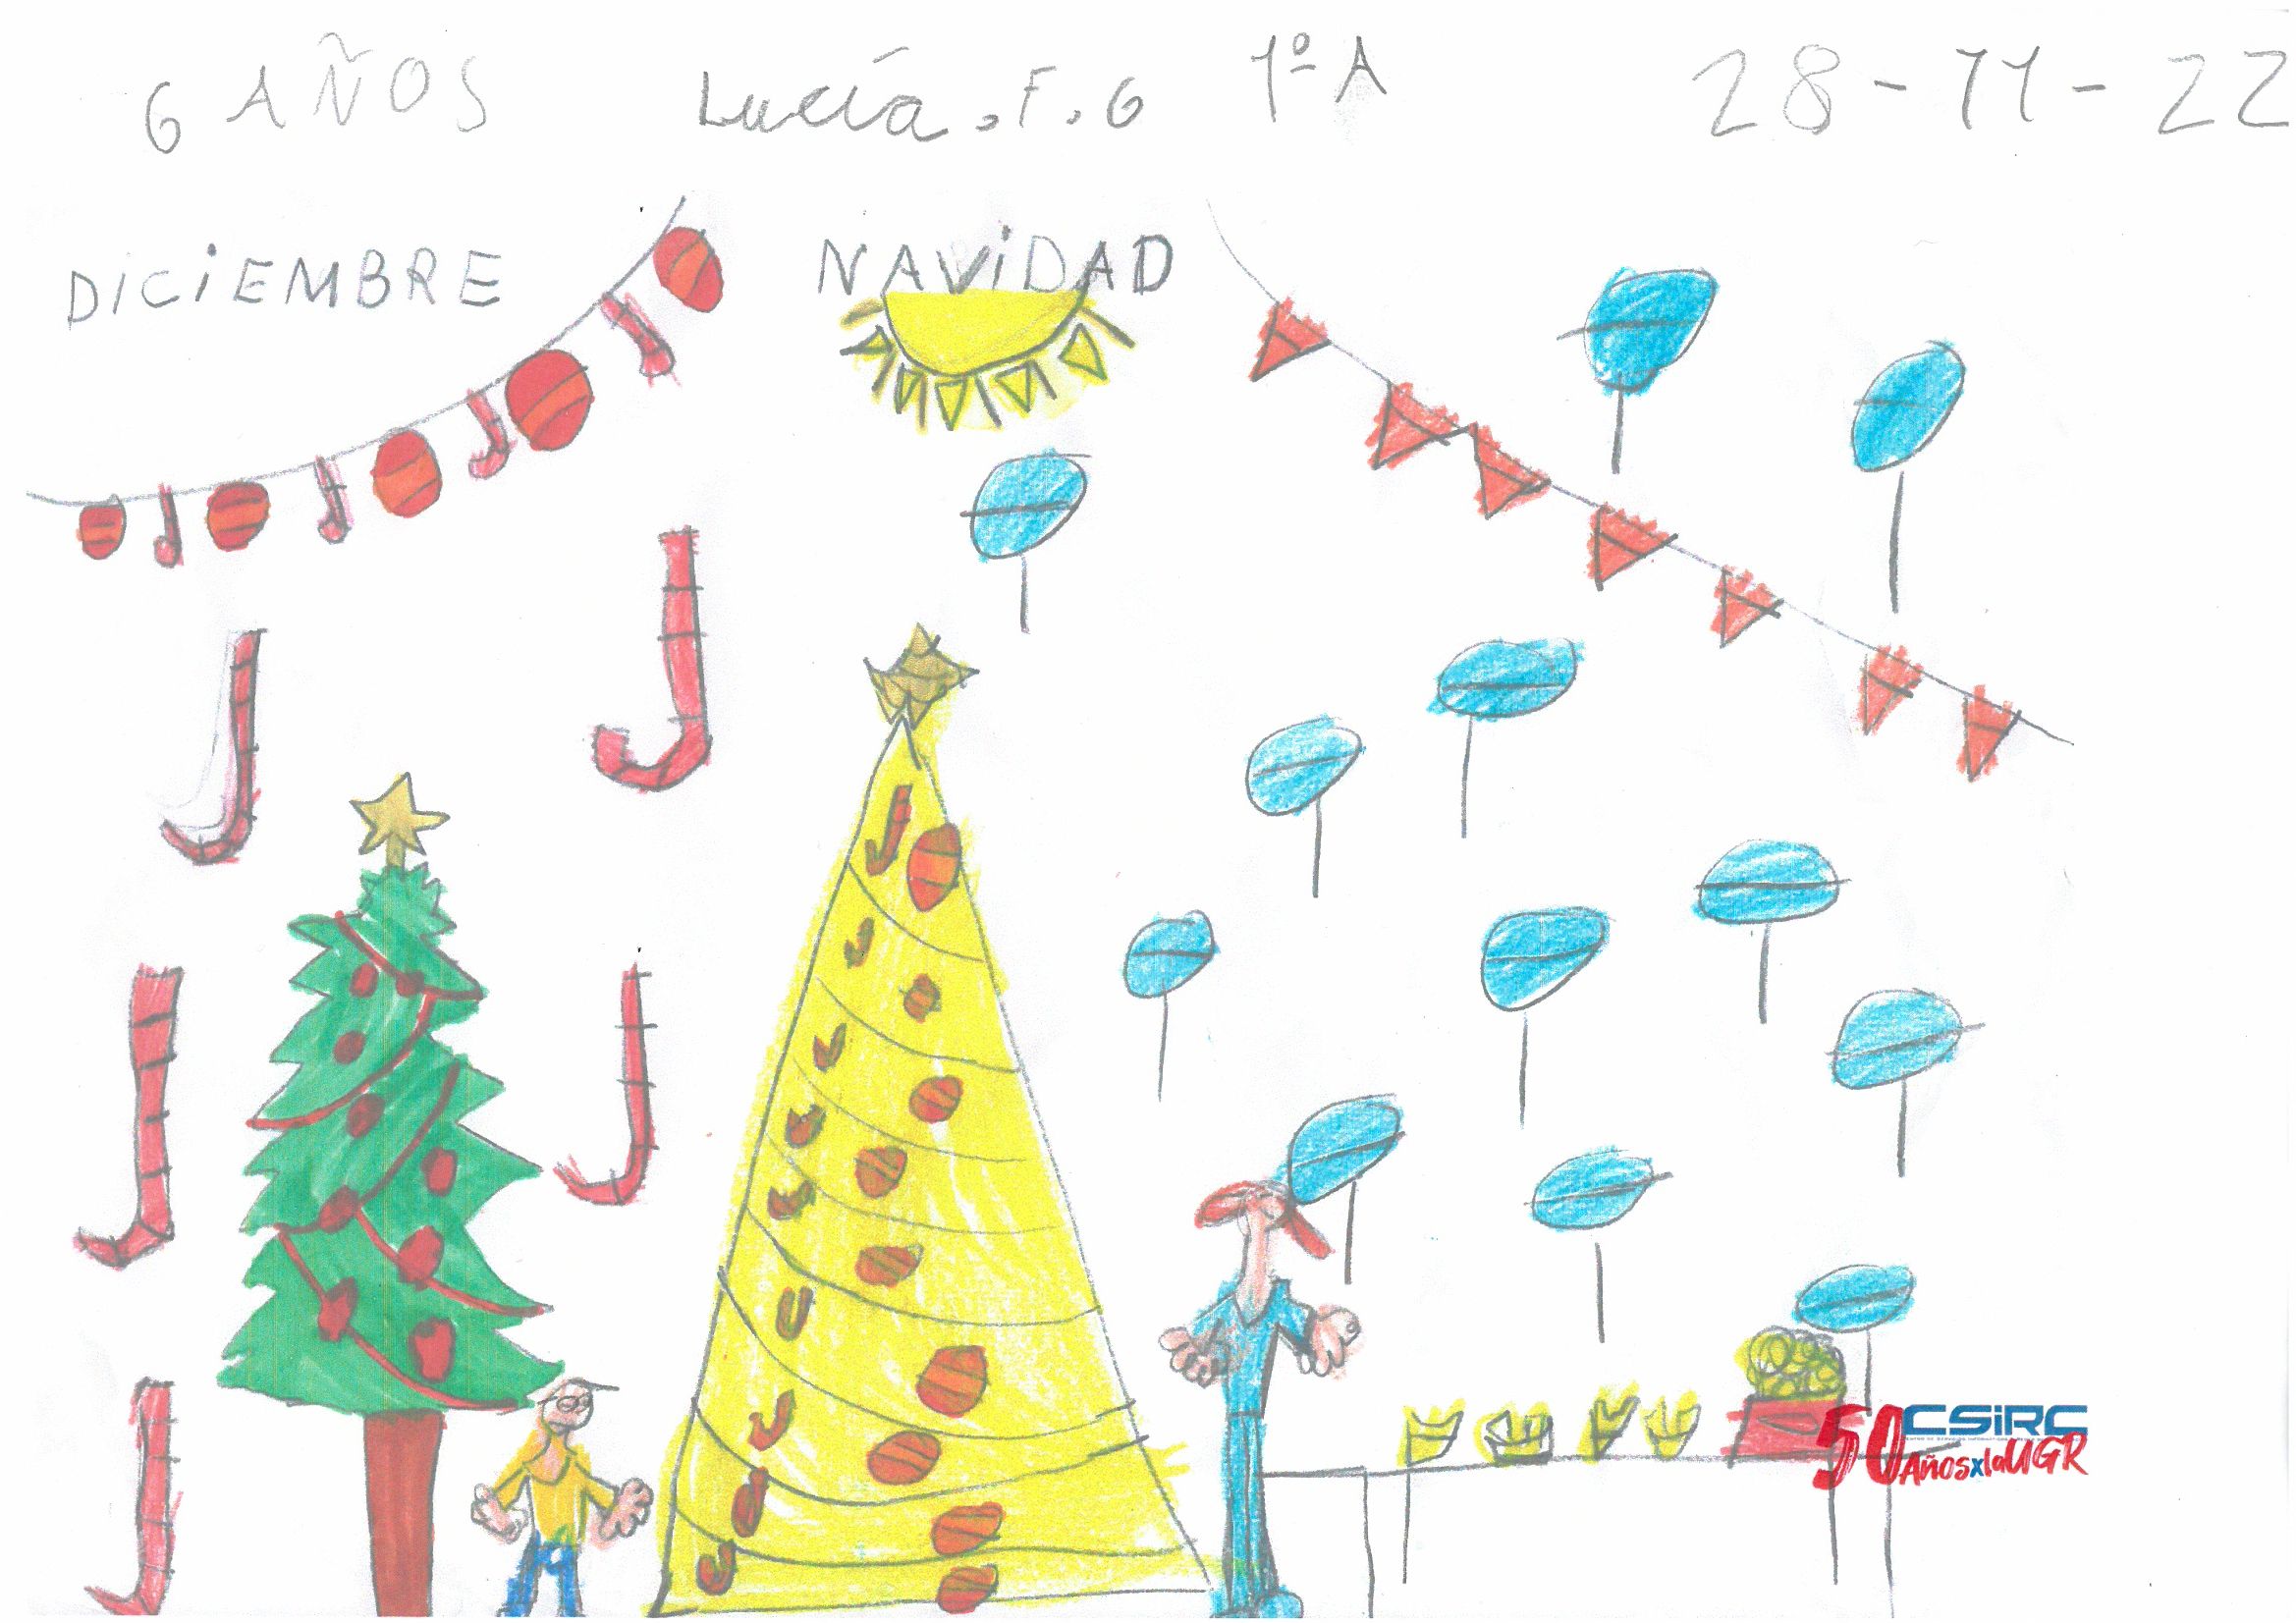 Dibujo infantil con motivos navideños, dos árboles y dos figuras